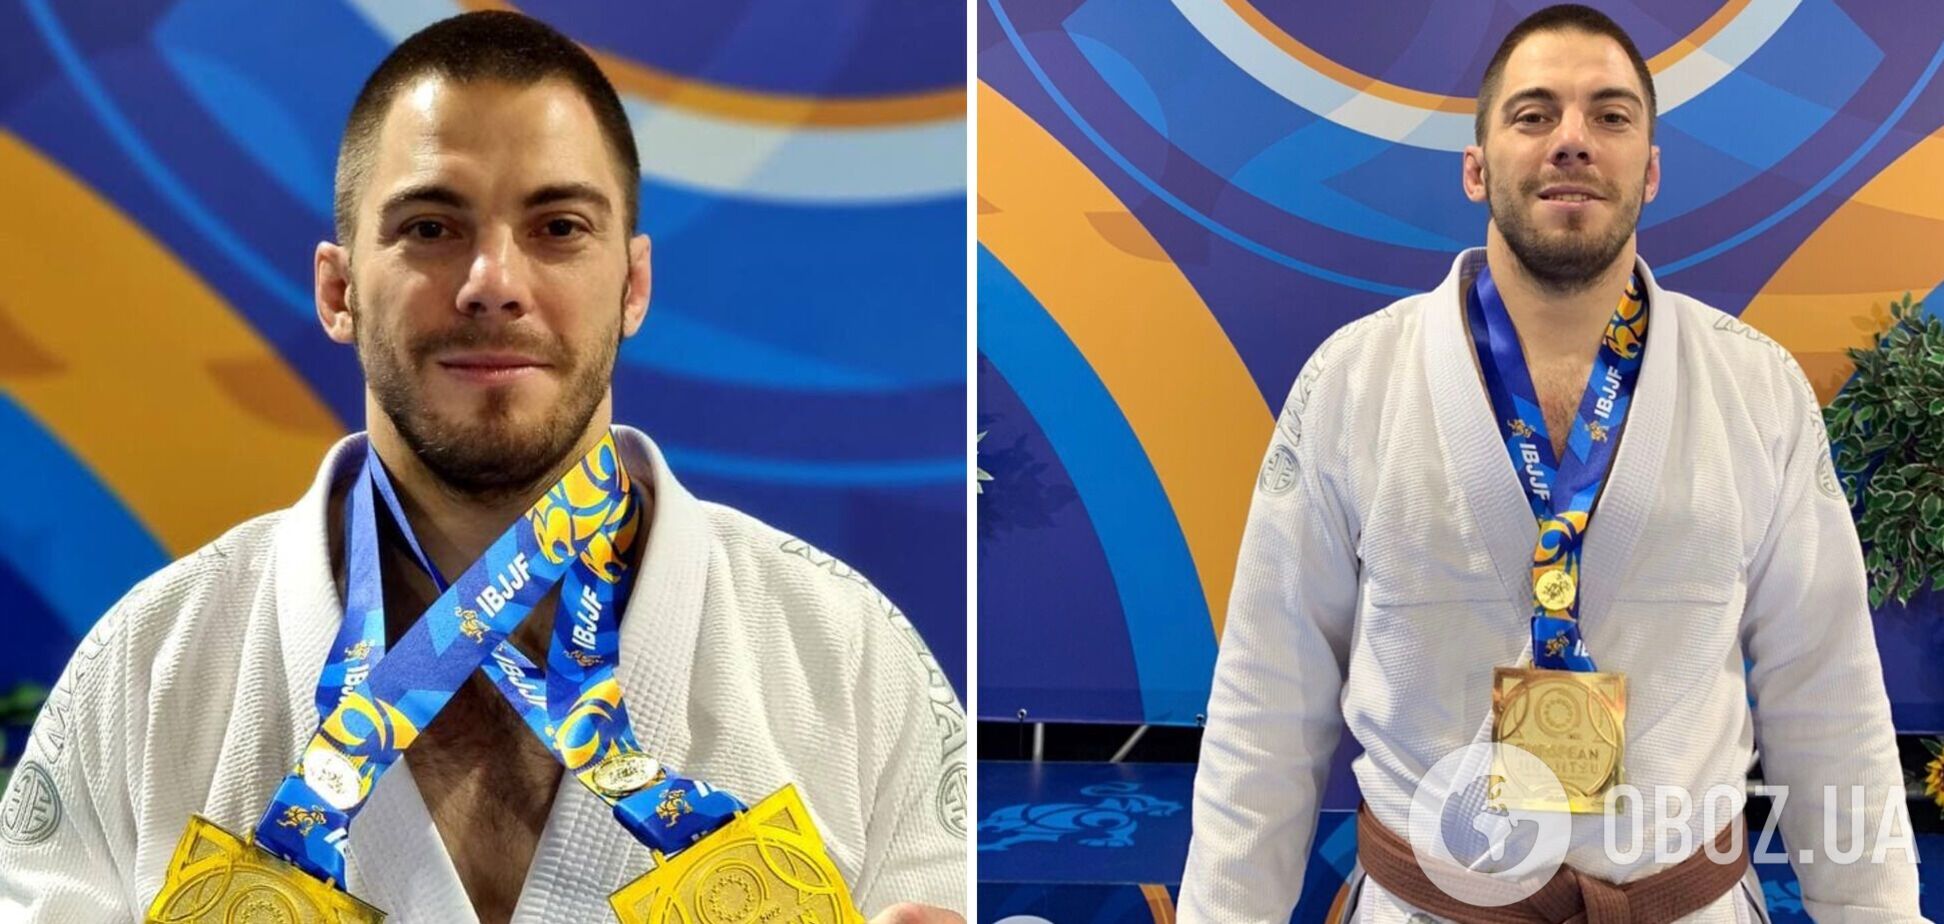 Українець Максим Задорожній завоював два 'золота' на чемпіонаті Європи з бразильського джиу-джитсу